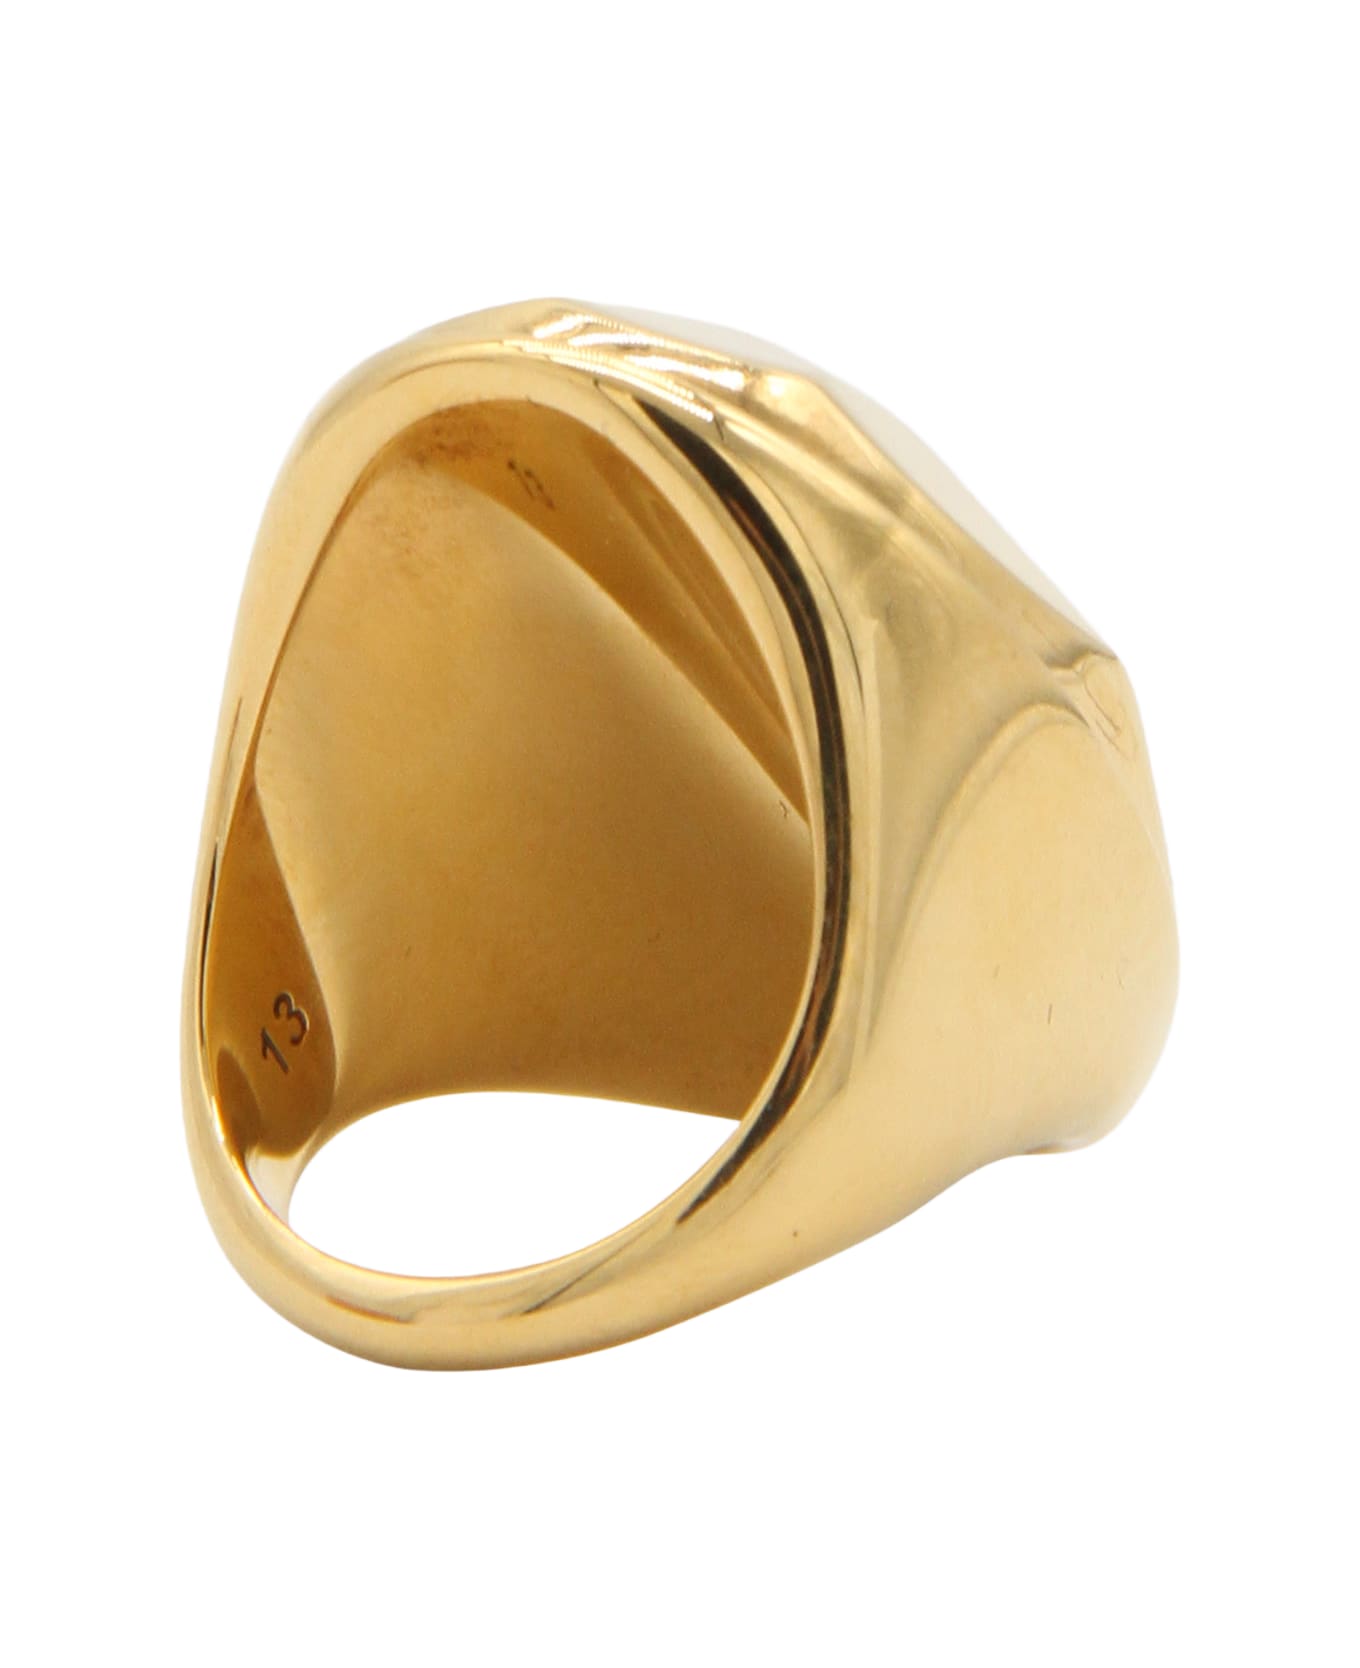 Alexander McQueen Brass Ring - Golden リング